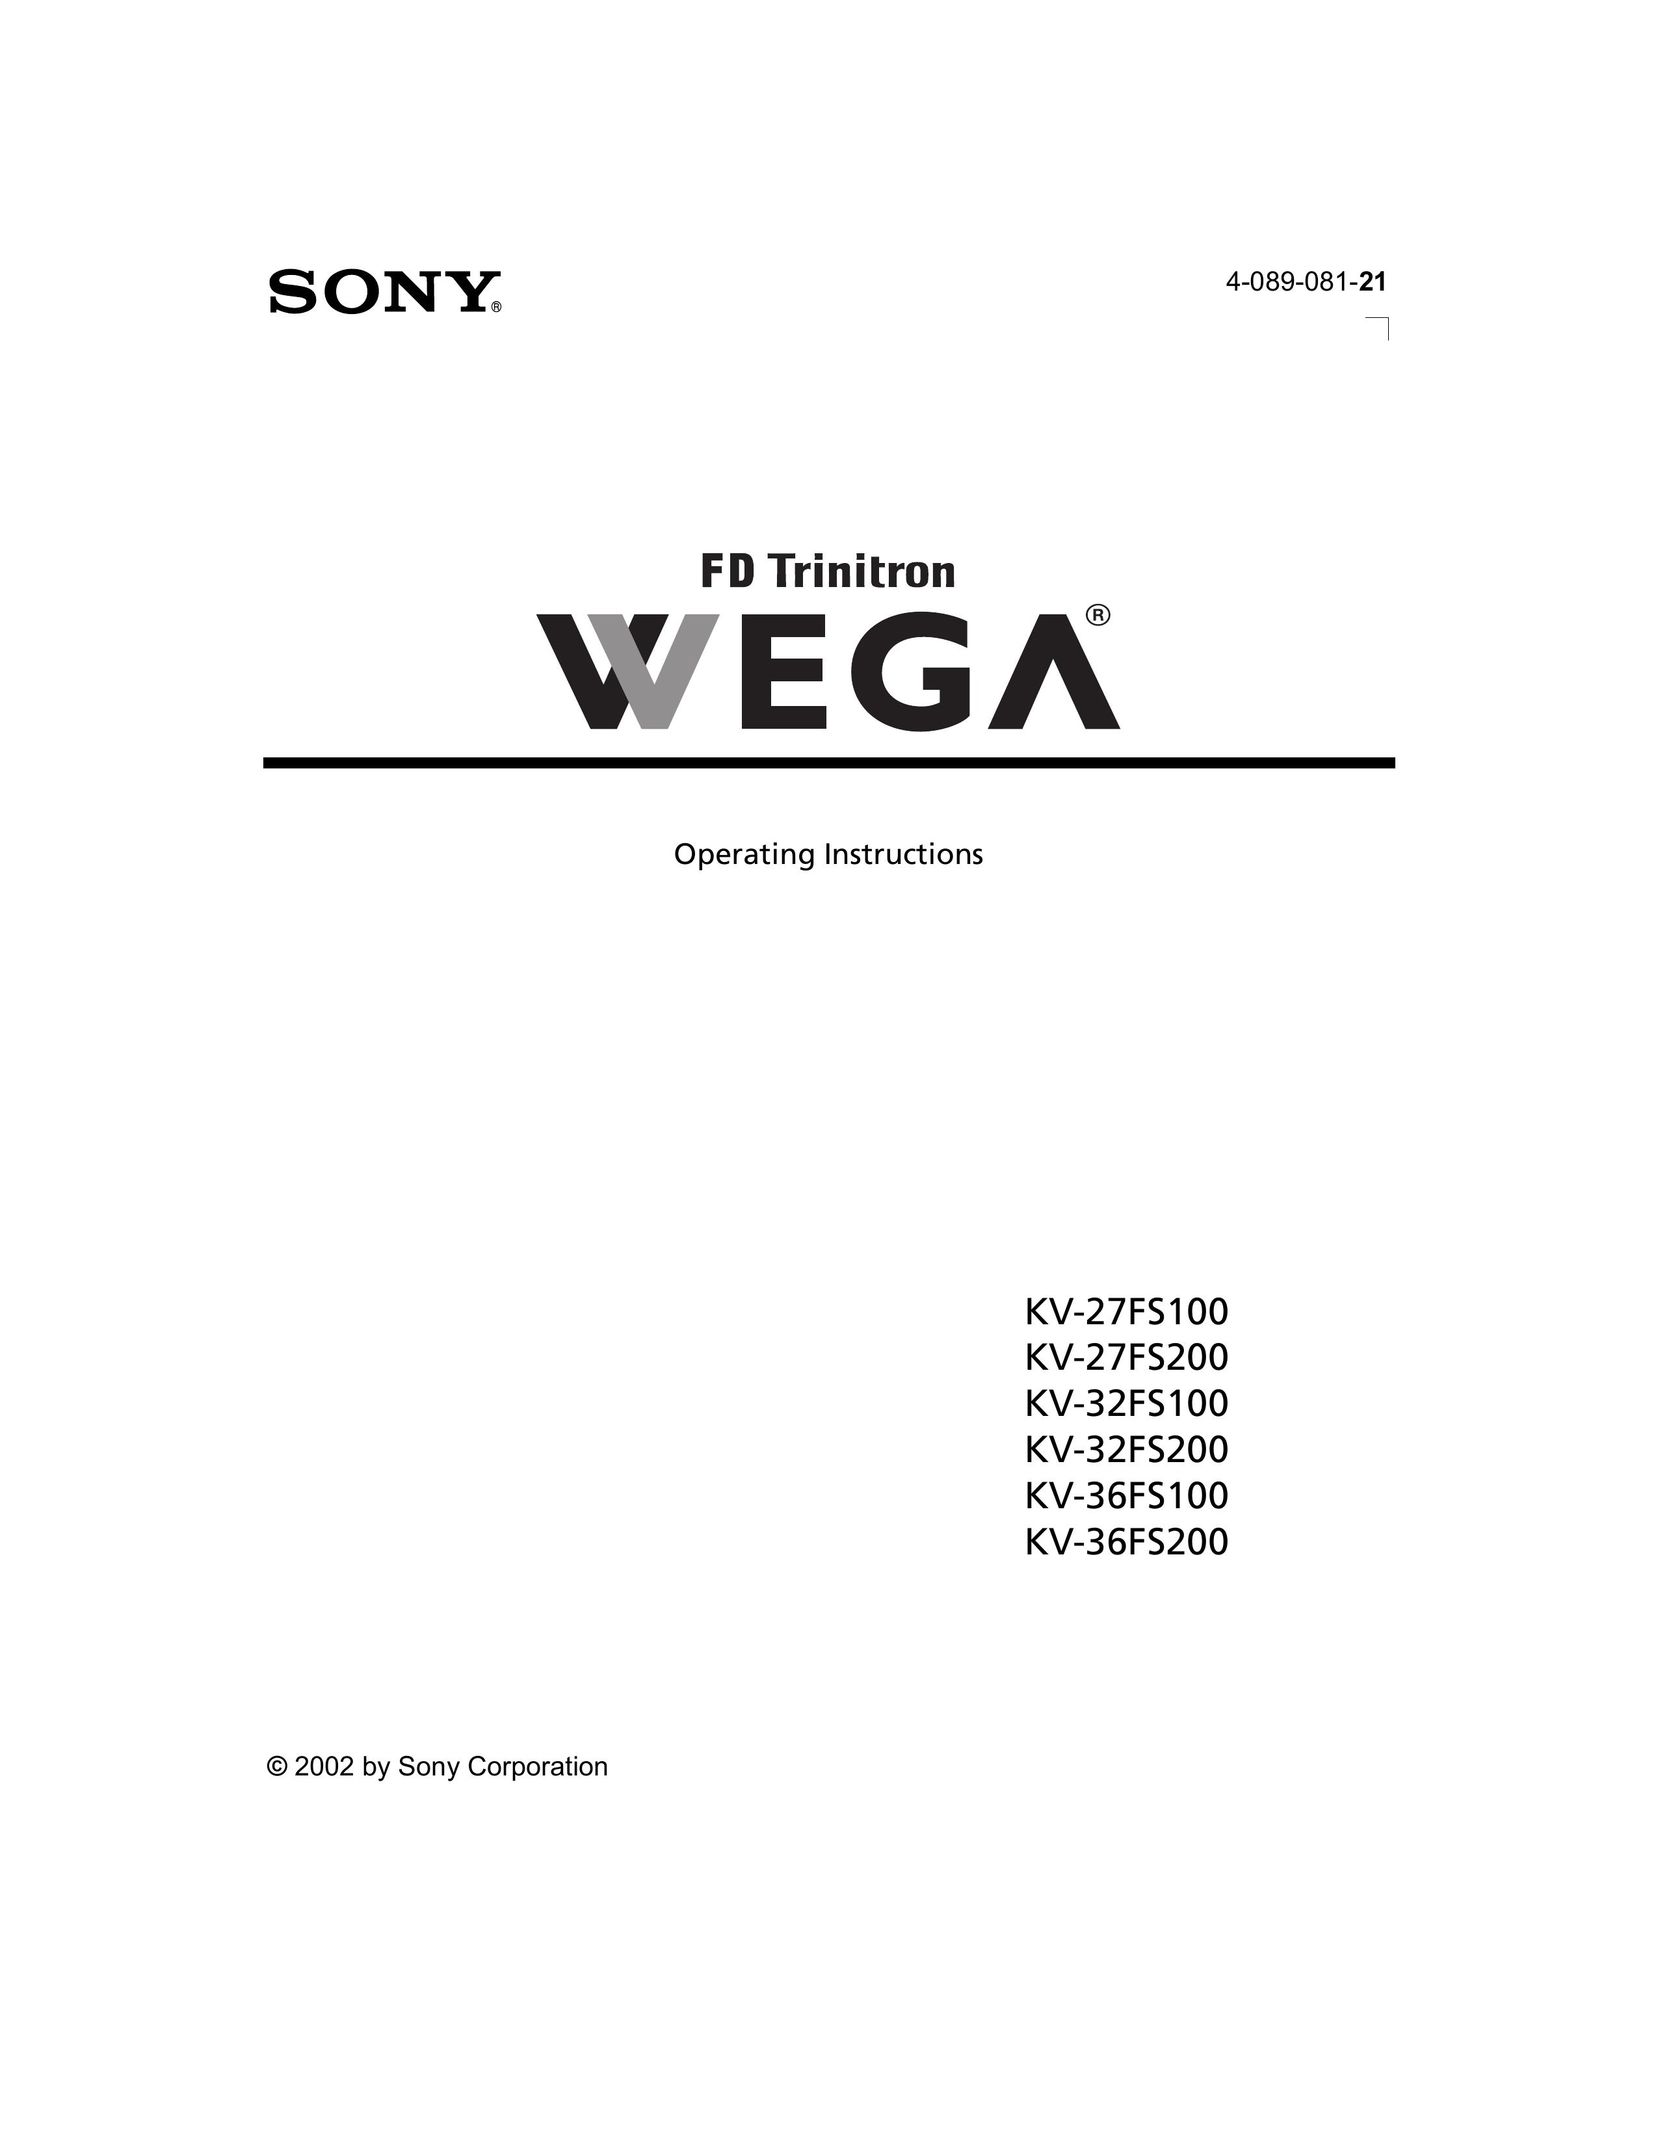 Sony KV-32FS200 Car Satellite TV System User Manual